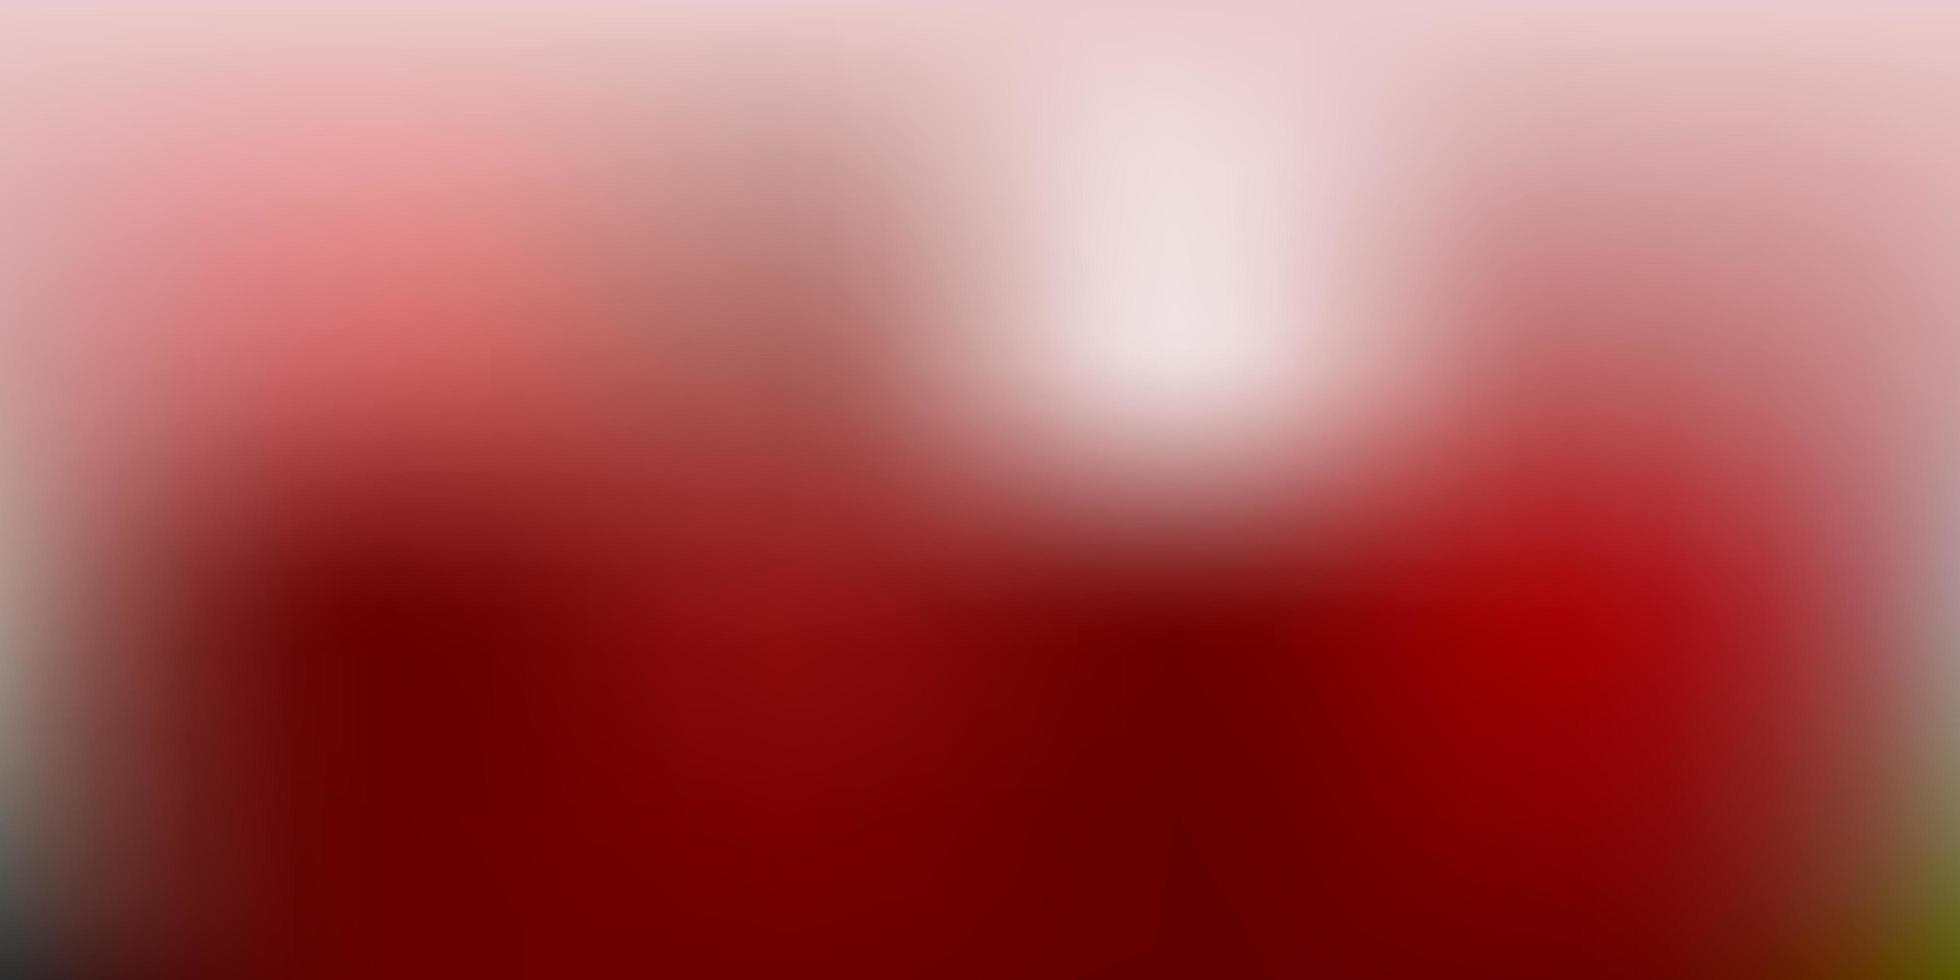 arrière-plan flou de vecteur rouge foncé